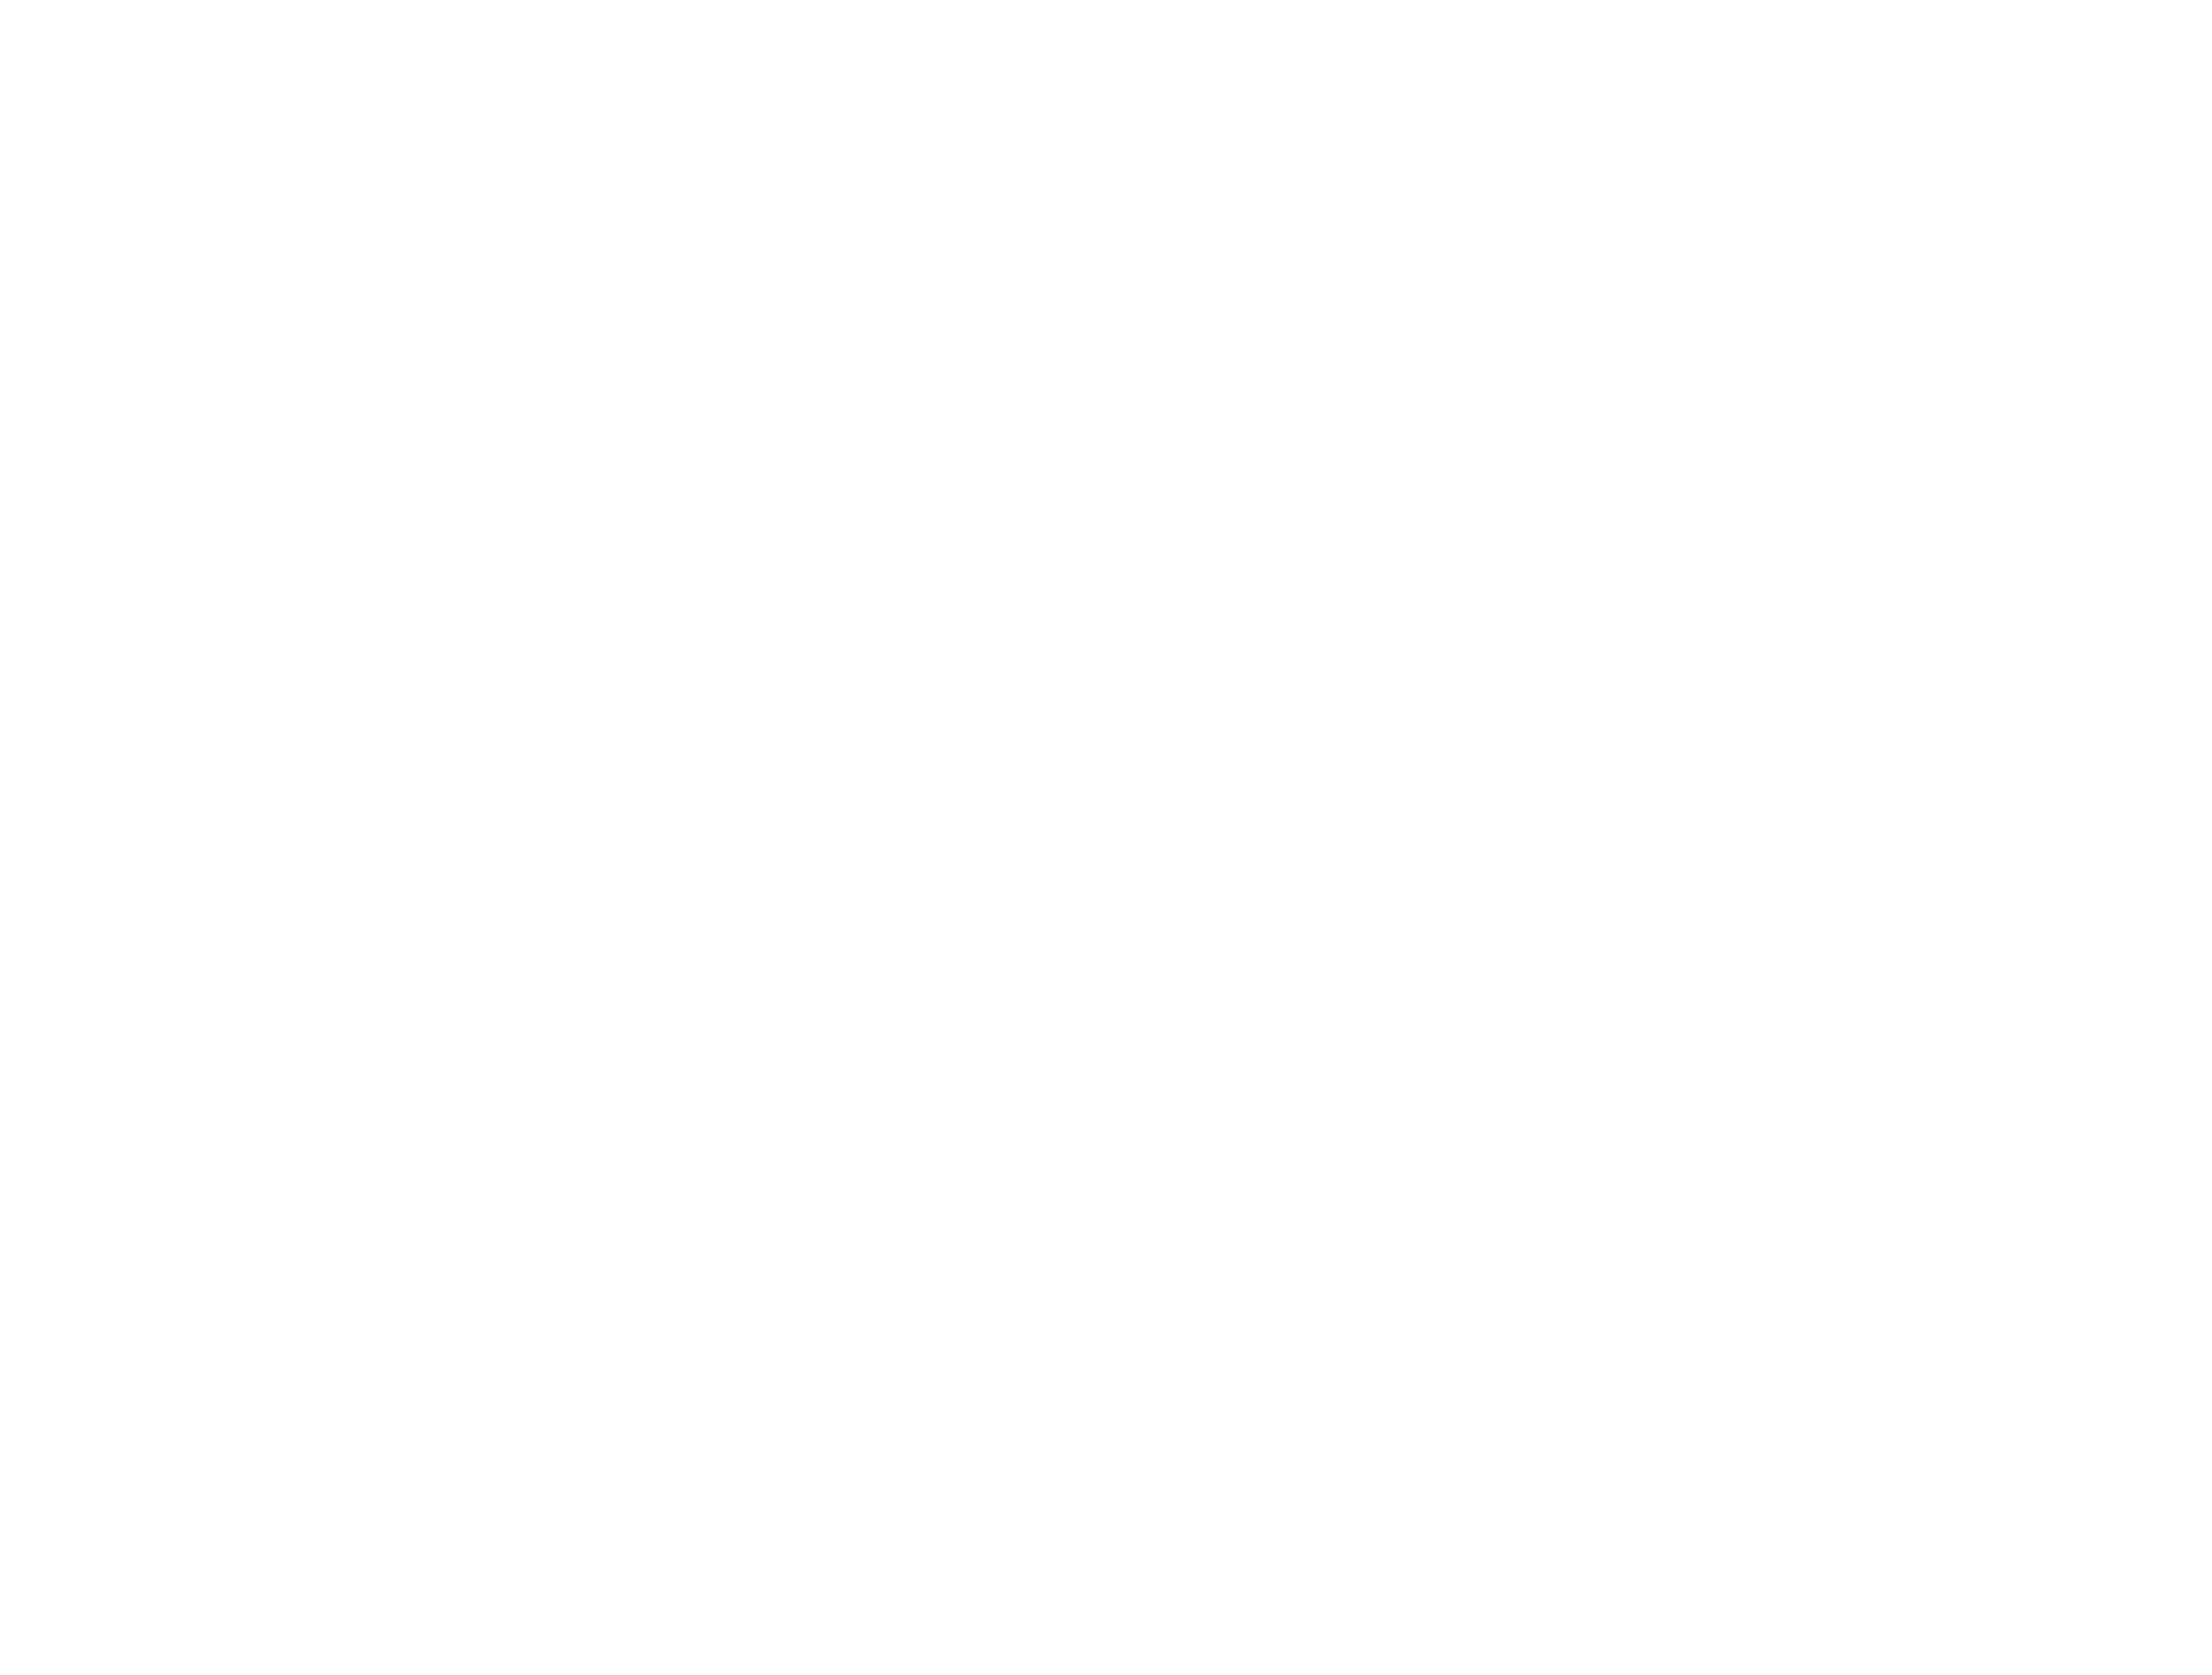 JasBro